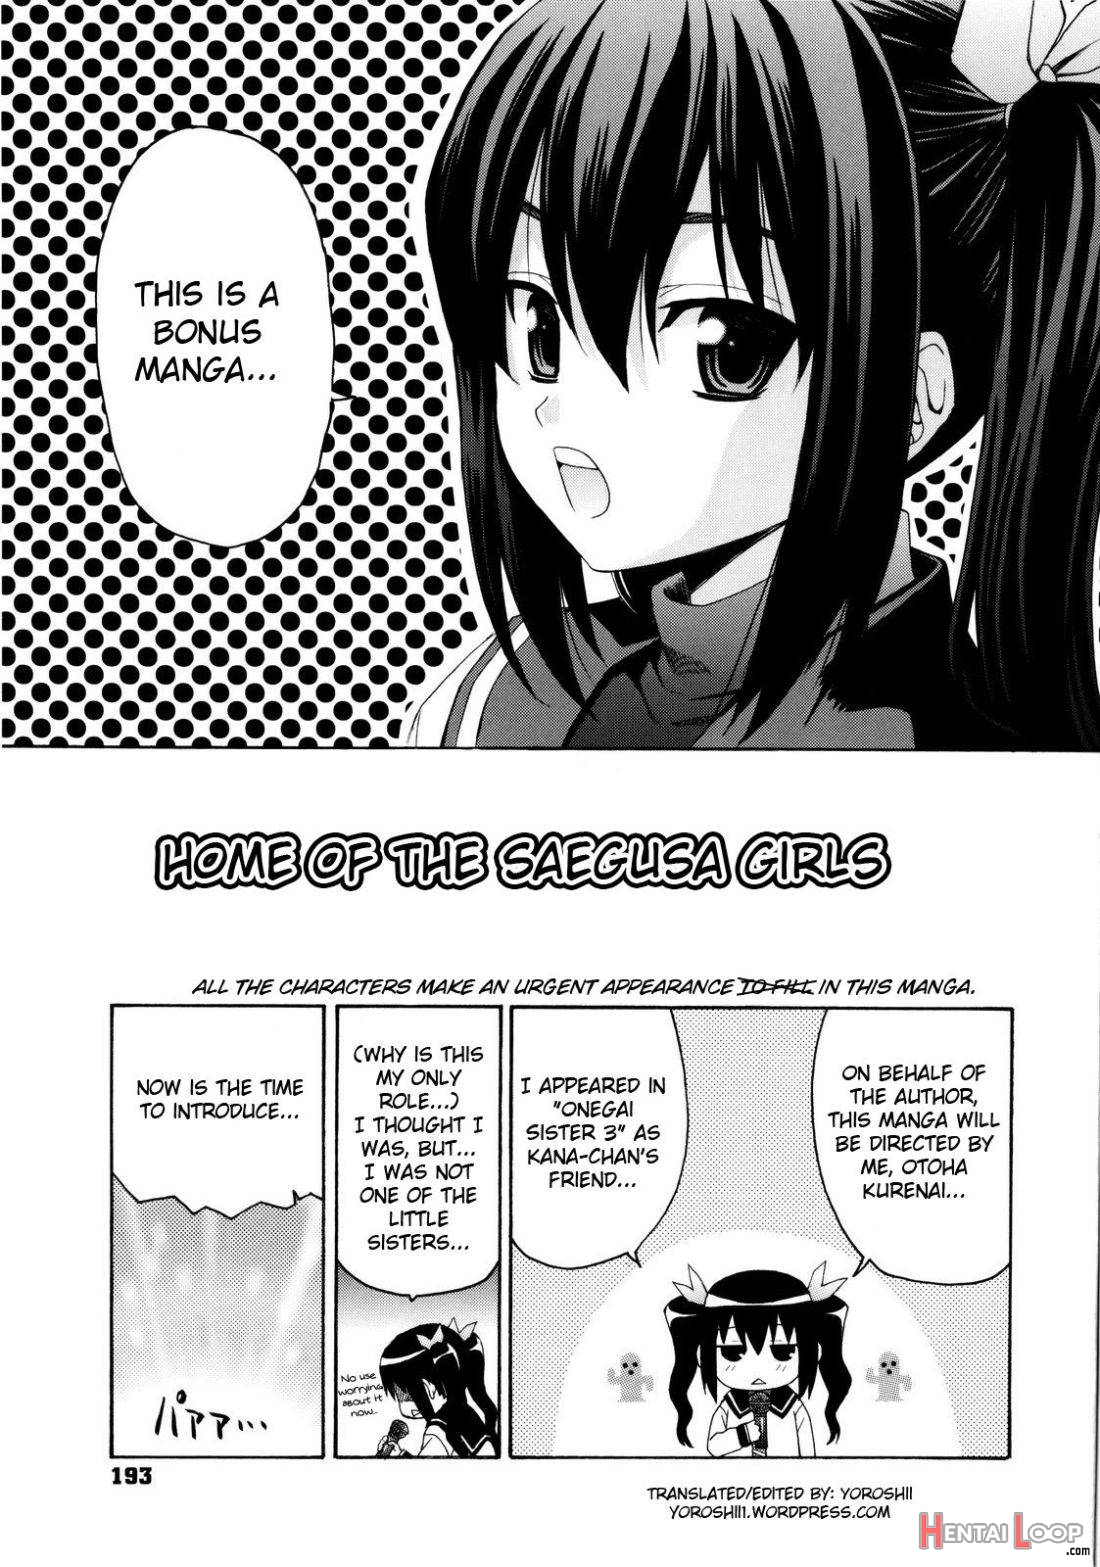 Imoten Bonus Manga page 1